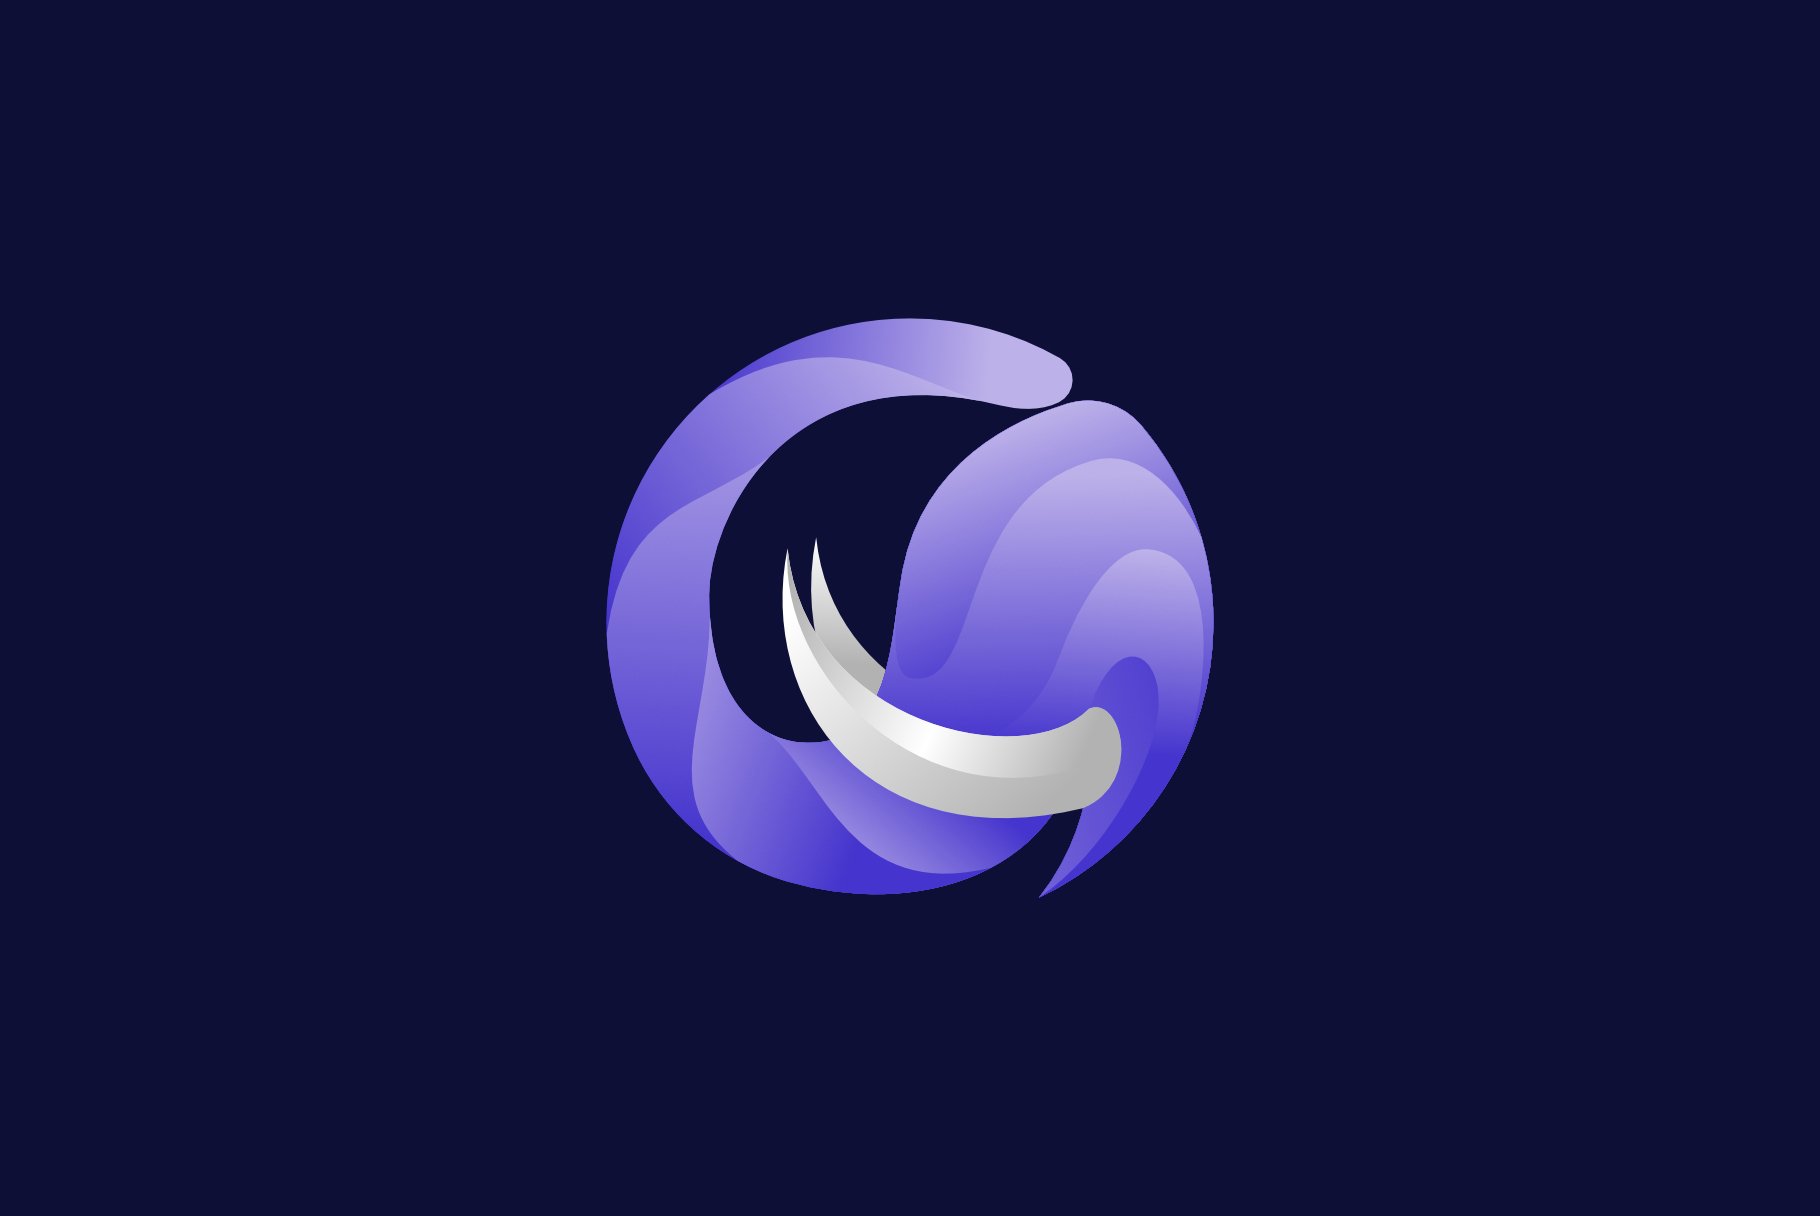 Circle Elephant Logo cover image.